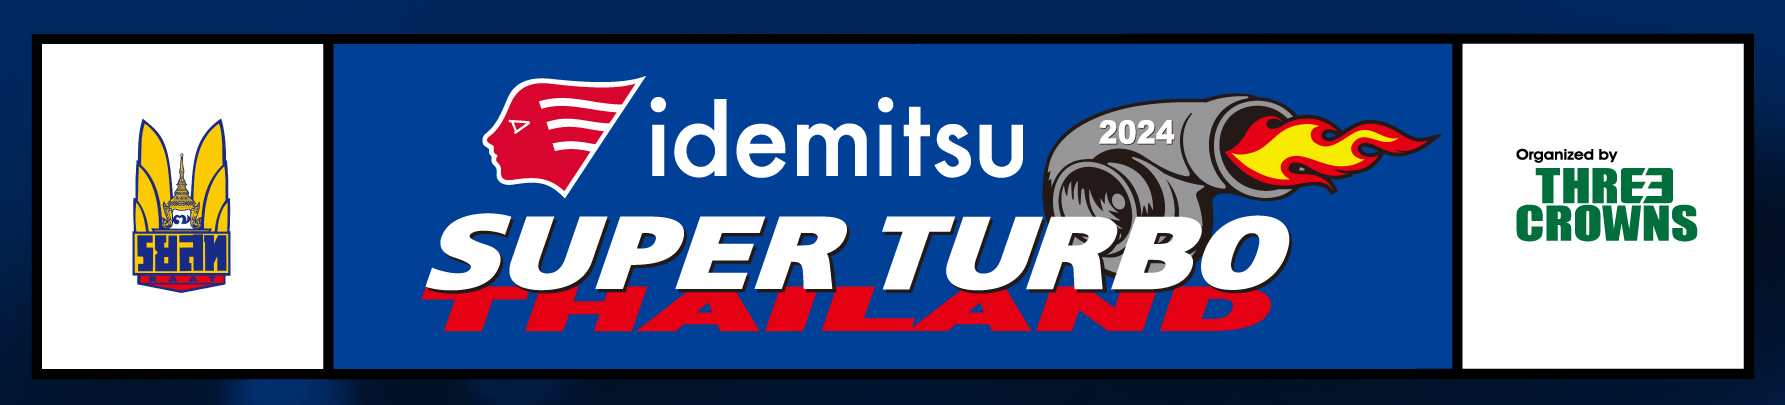 Idemitsu Super Turbo Thailand